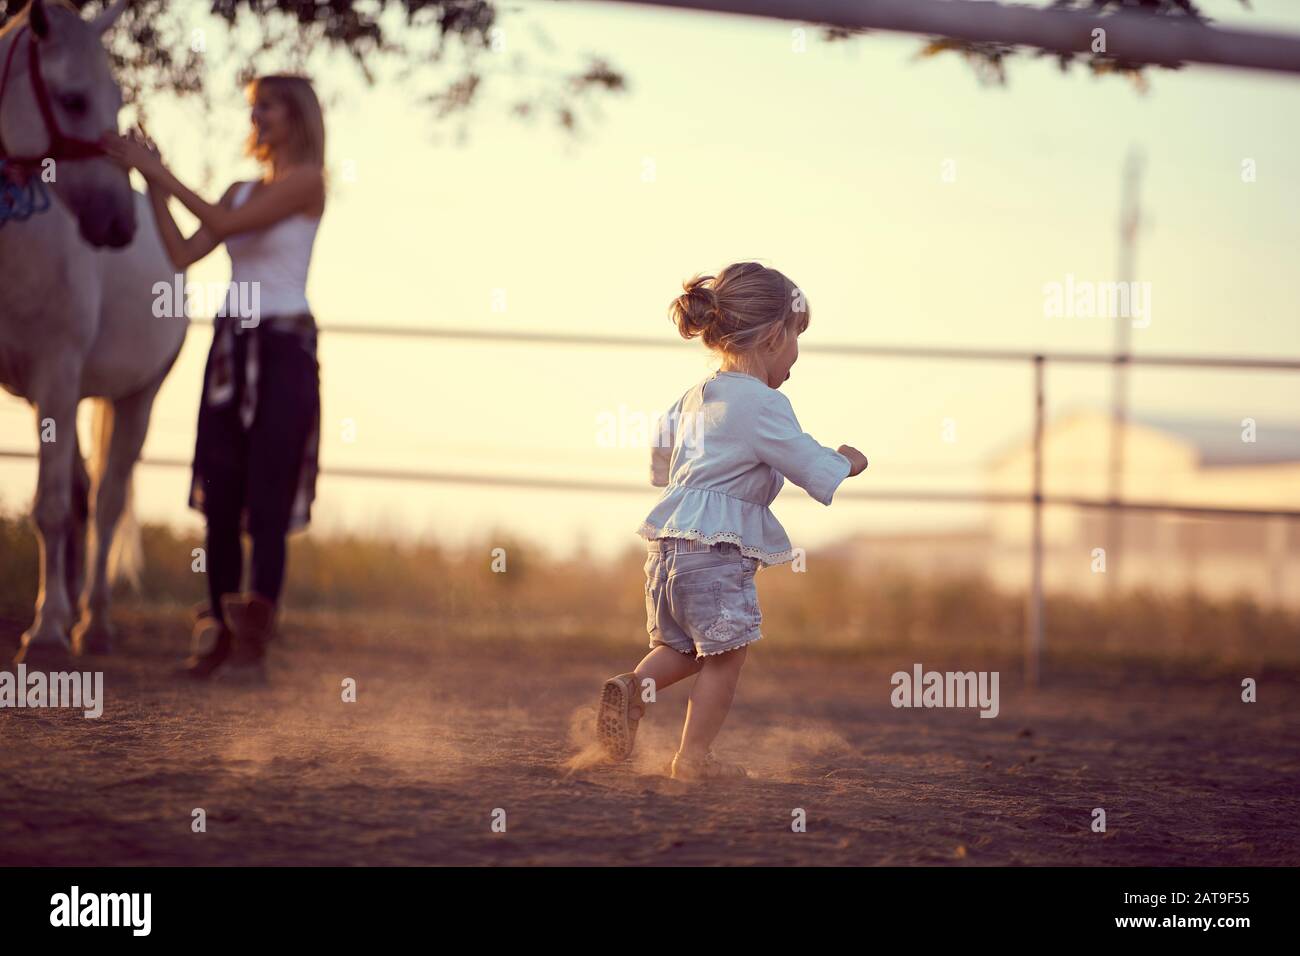 Petite fille qui court sur le ranch, alors que la maman est en train de petter un cheval. Divertissement sur la campagne, coucher de soleil heure d'or. Concept de la nature de la liberté. Banque D'Images